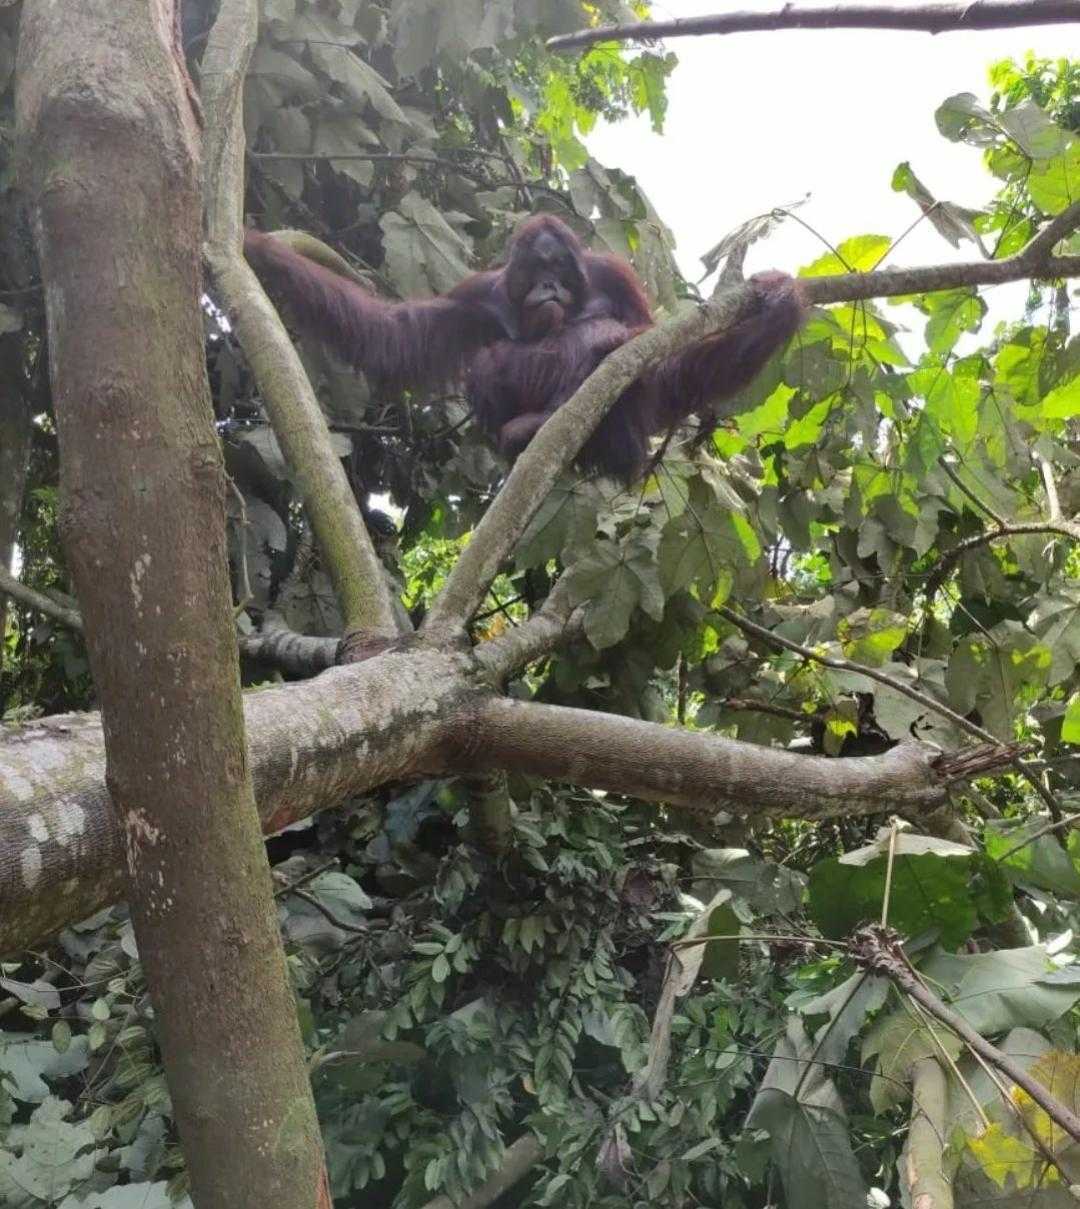 Seekor orangutan yang viral lantaran menyeberang Jalan Simpang Perdau dan diberi makan serta minum oleh pengguna jalan, kini telah dilepasliarkan. | Foto: Dok. BKSDA Kaltim